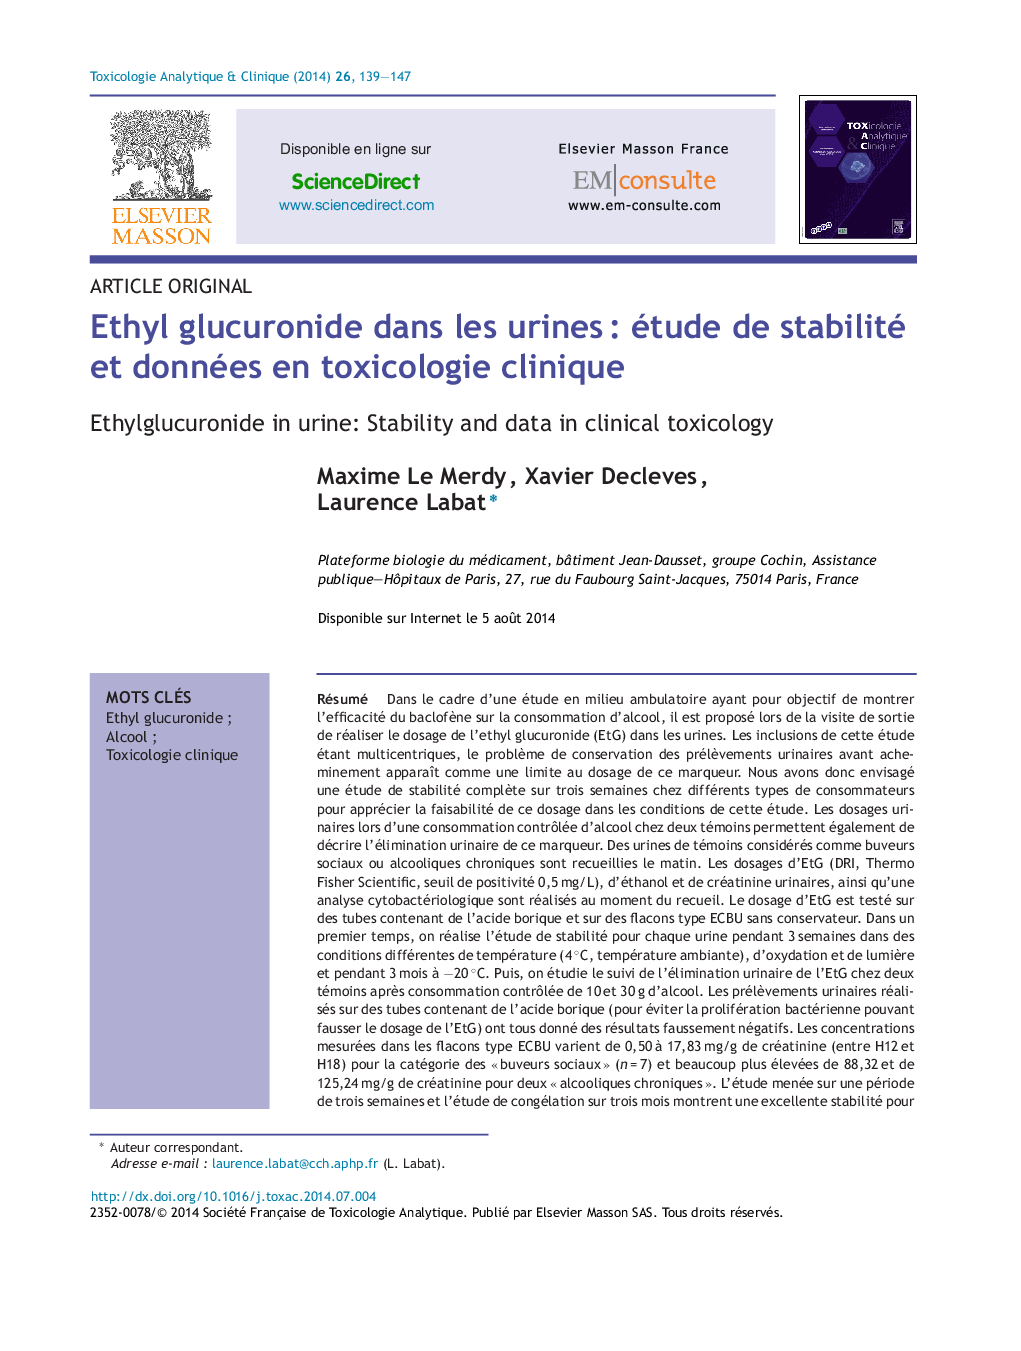 Ethyl glucuronide dans les urinesÂ : étude de stabilité et données en toxicologie clinique